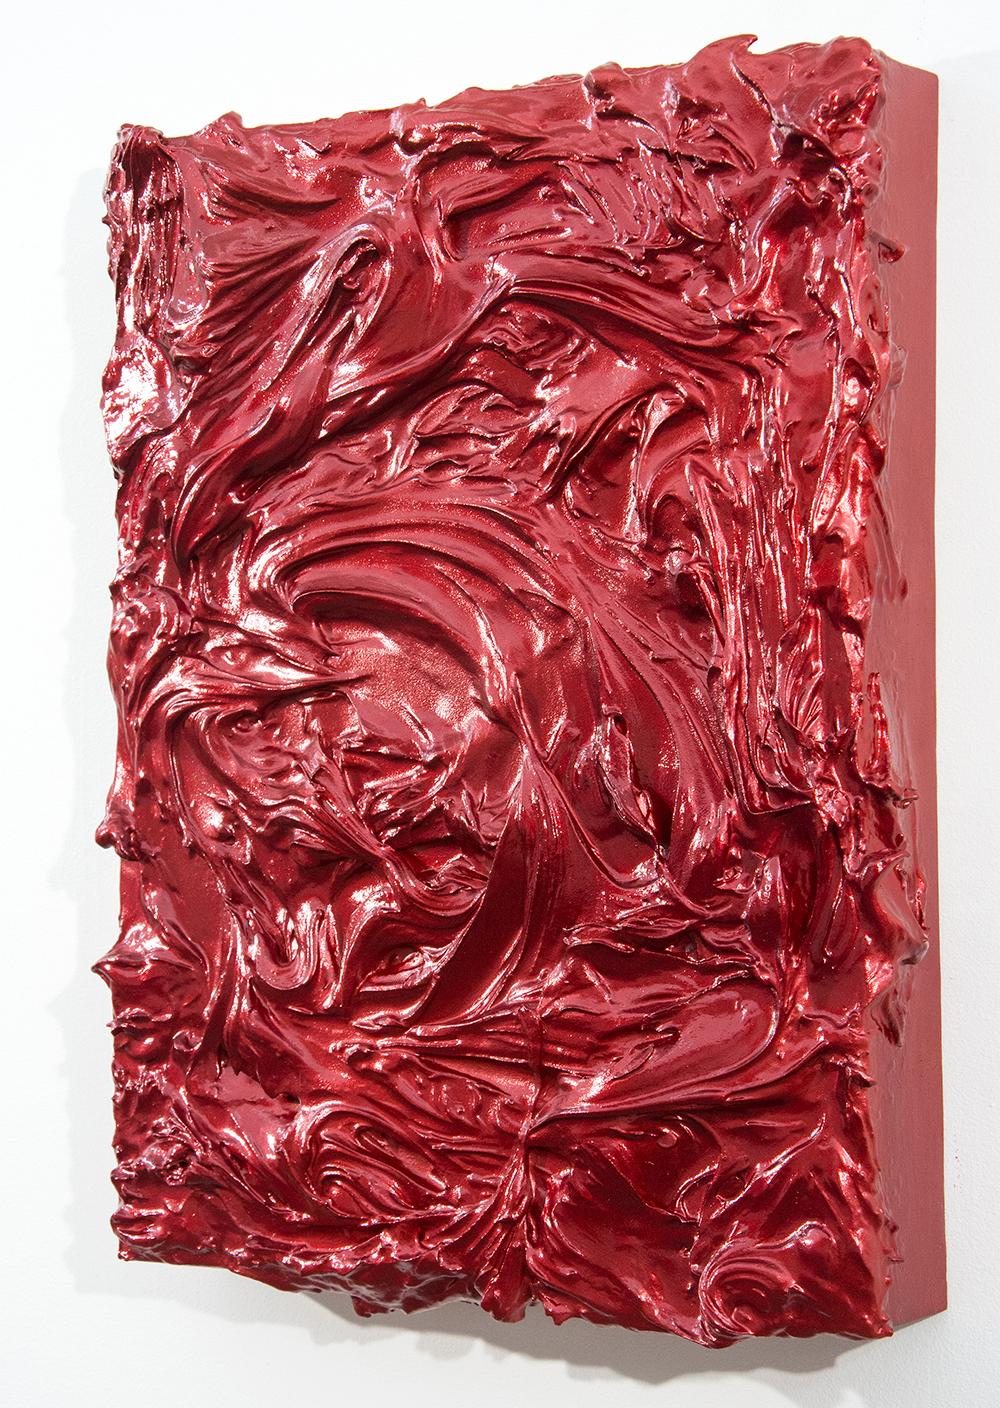 Red Storm Surge - brillant, empâtement, abstrait, acrylique sur panneau - Contemporain Mixed Media Art par Shayne Dark